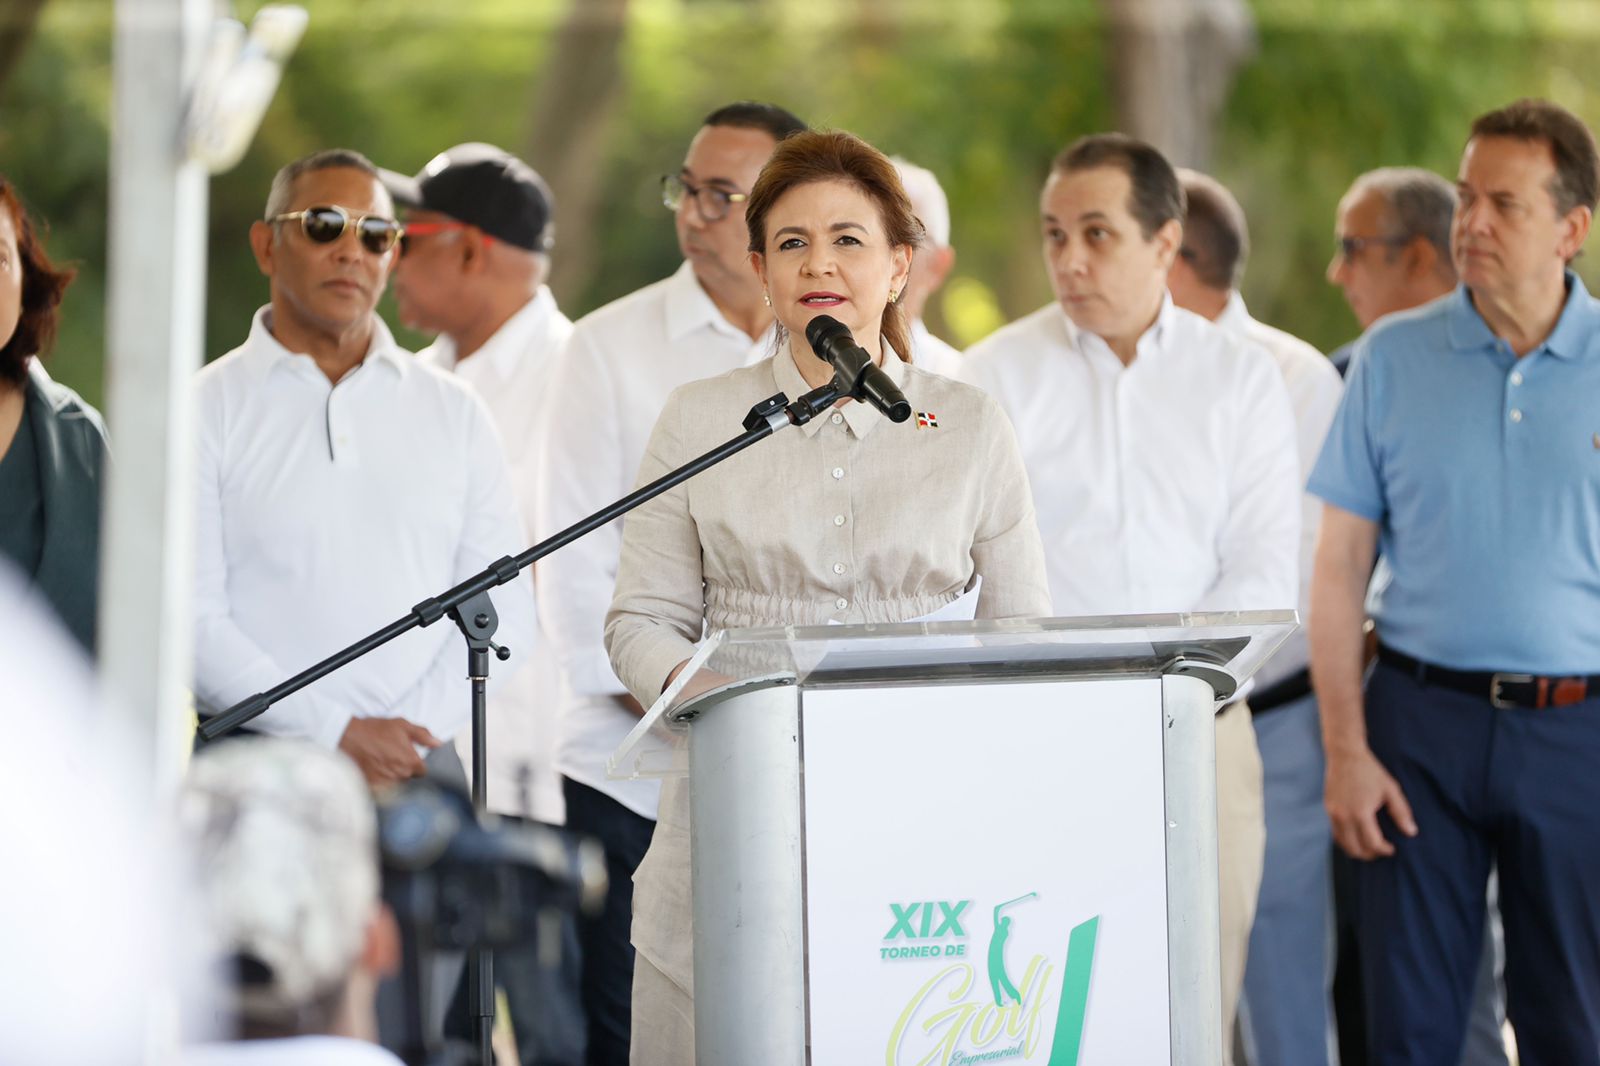 REPÚBLICA DOMINICANA: Vicepresidenta Raquel Peña asegura Gobierno tiene compromiso de acompañar a los emprendedores